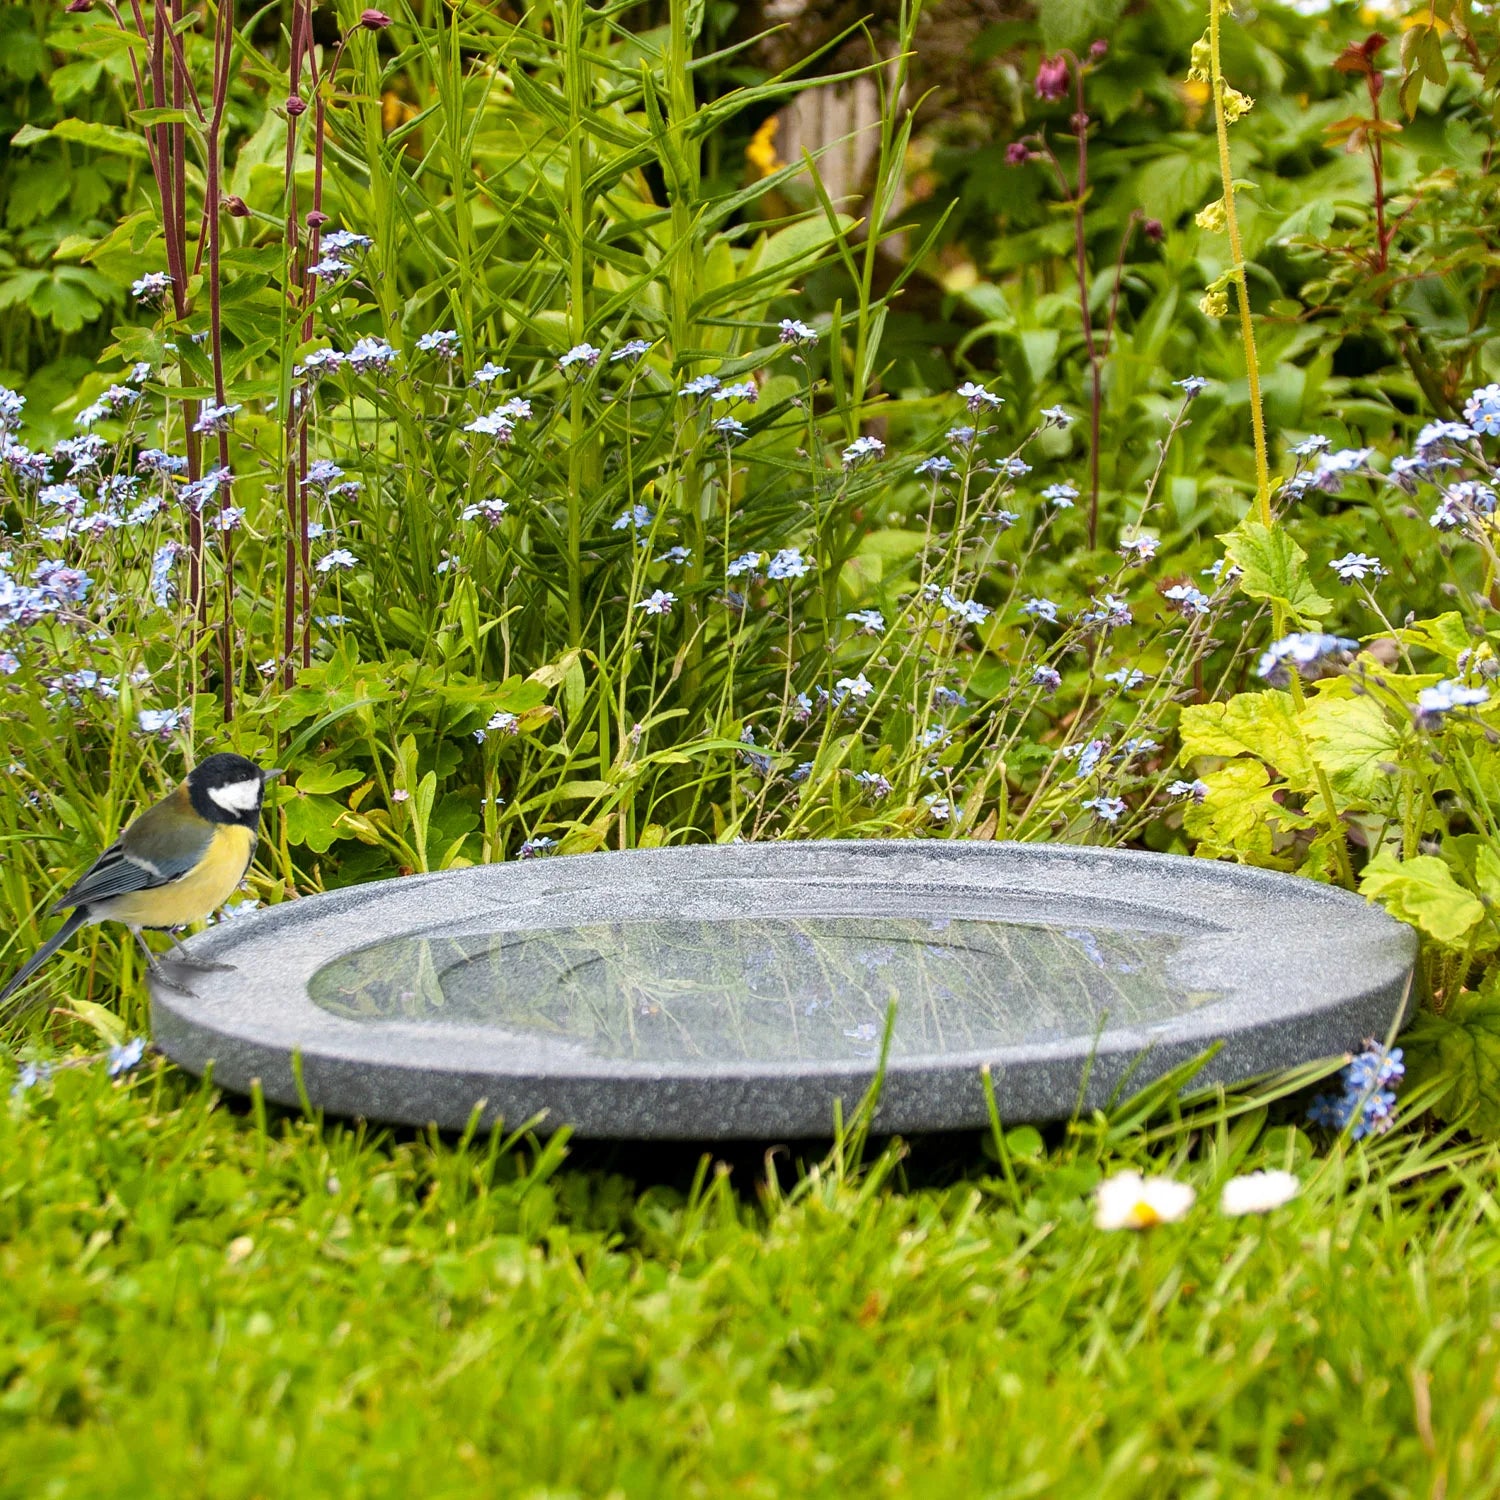 Wildlife World Garden Bird Bath and Drinker